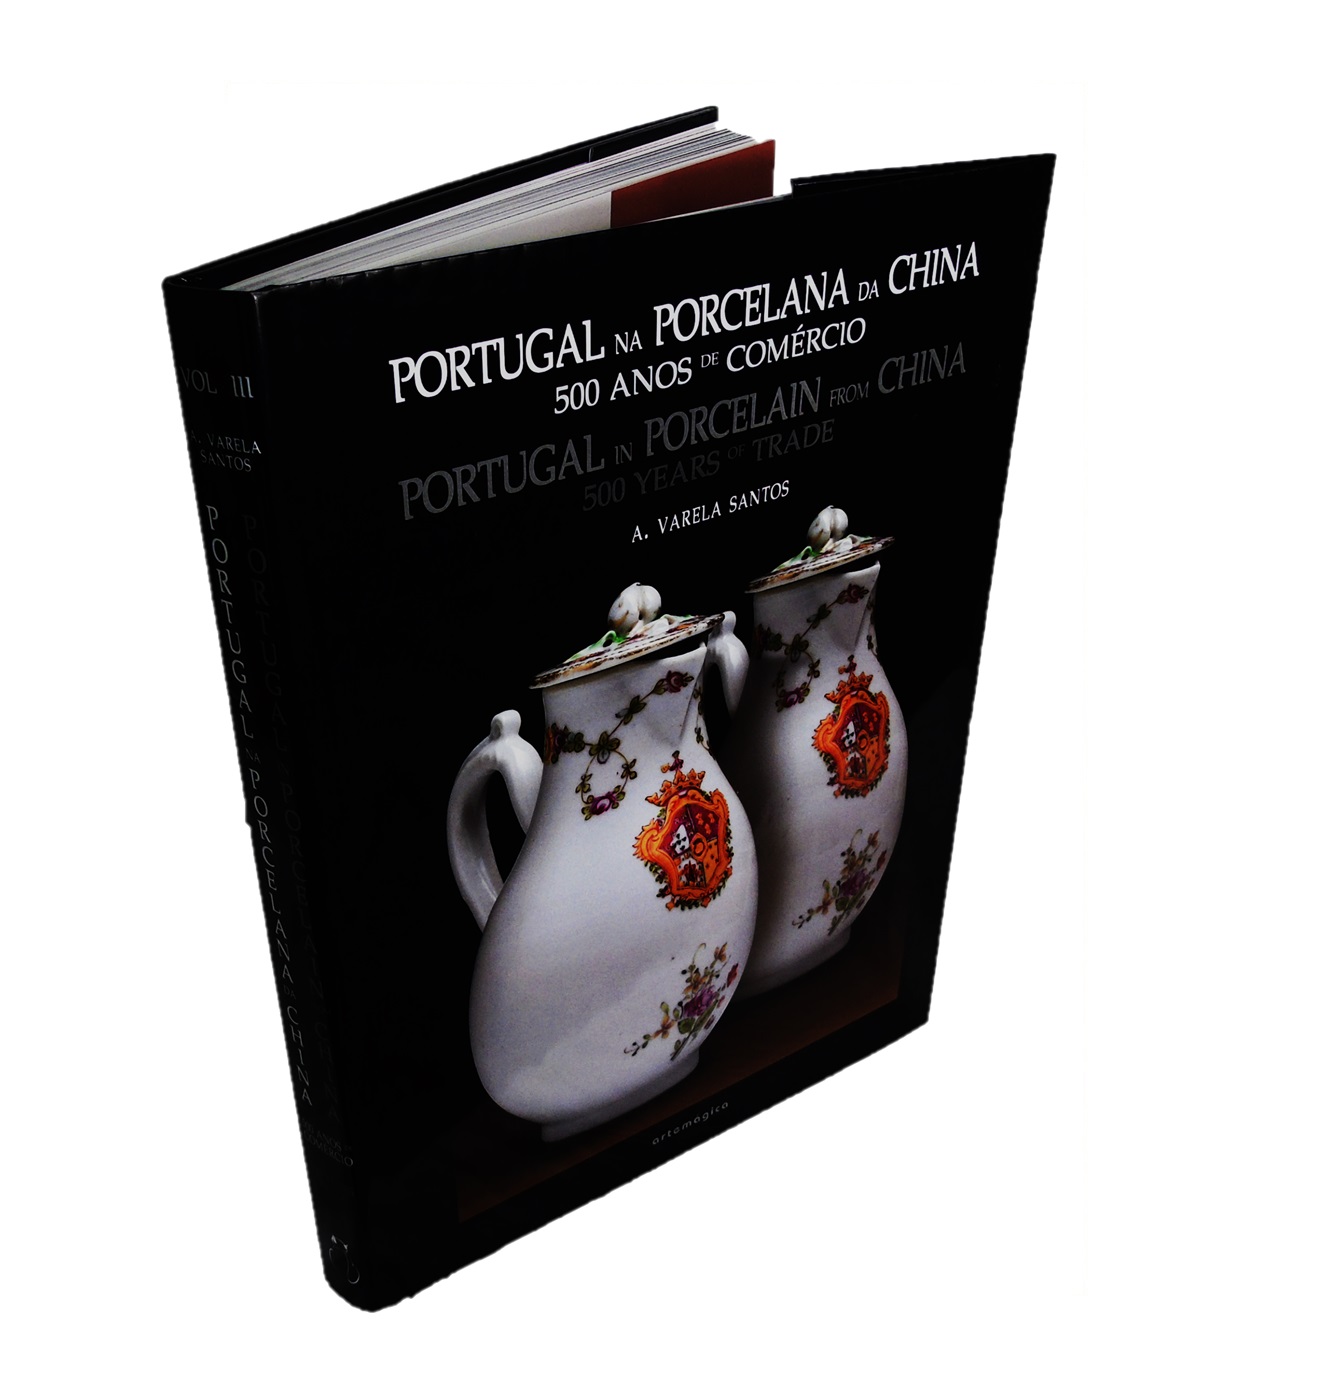 Portugal na Porcelana da China: final séc. XVIII até meados XIX - Encomendas aristocracia civil (Vol. III).